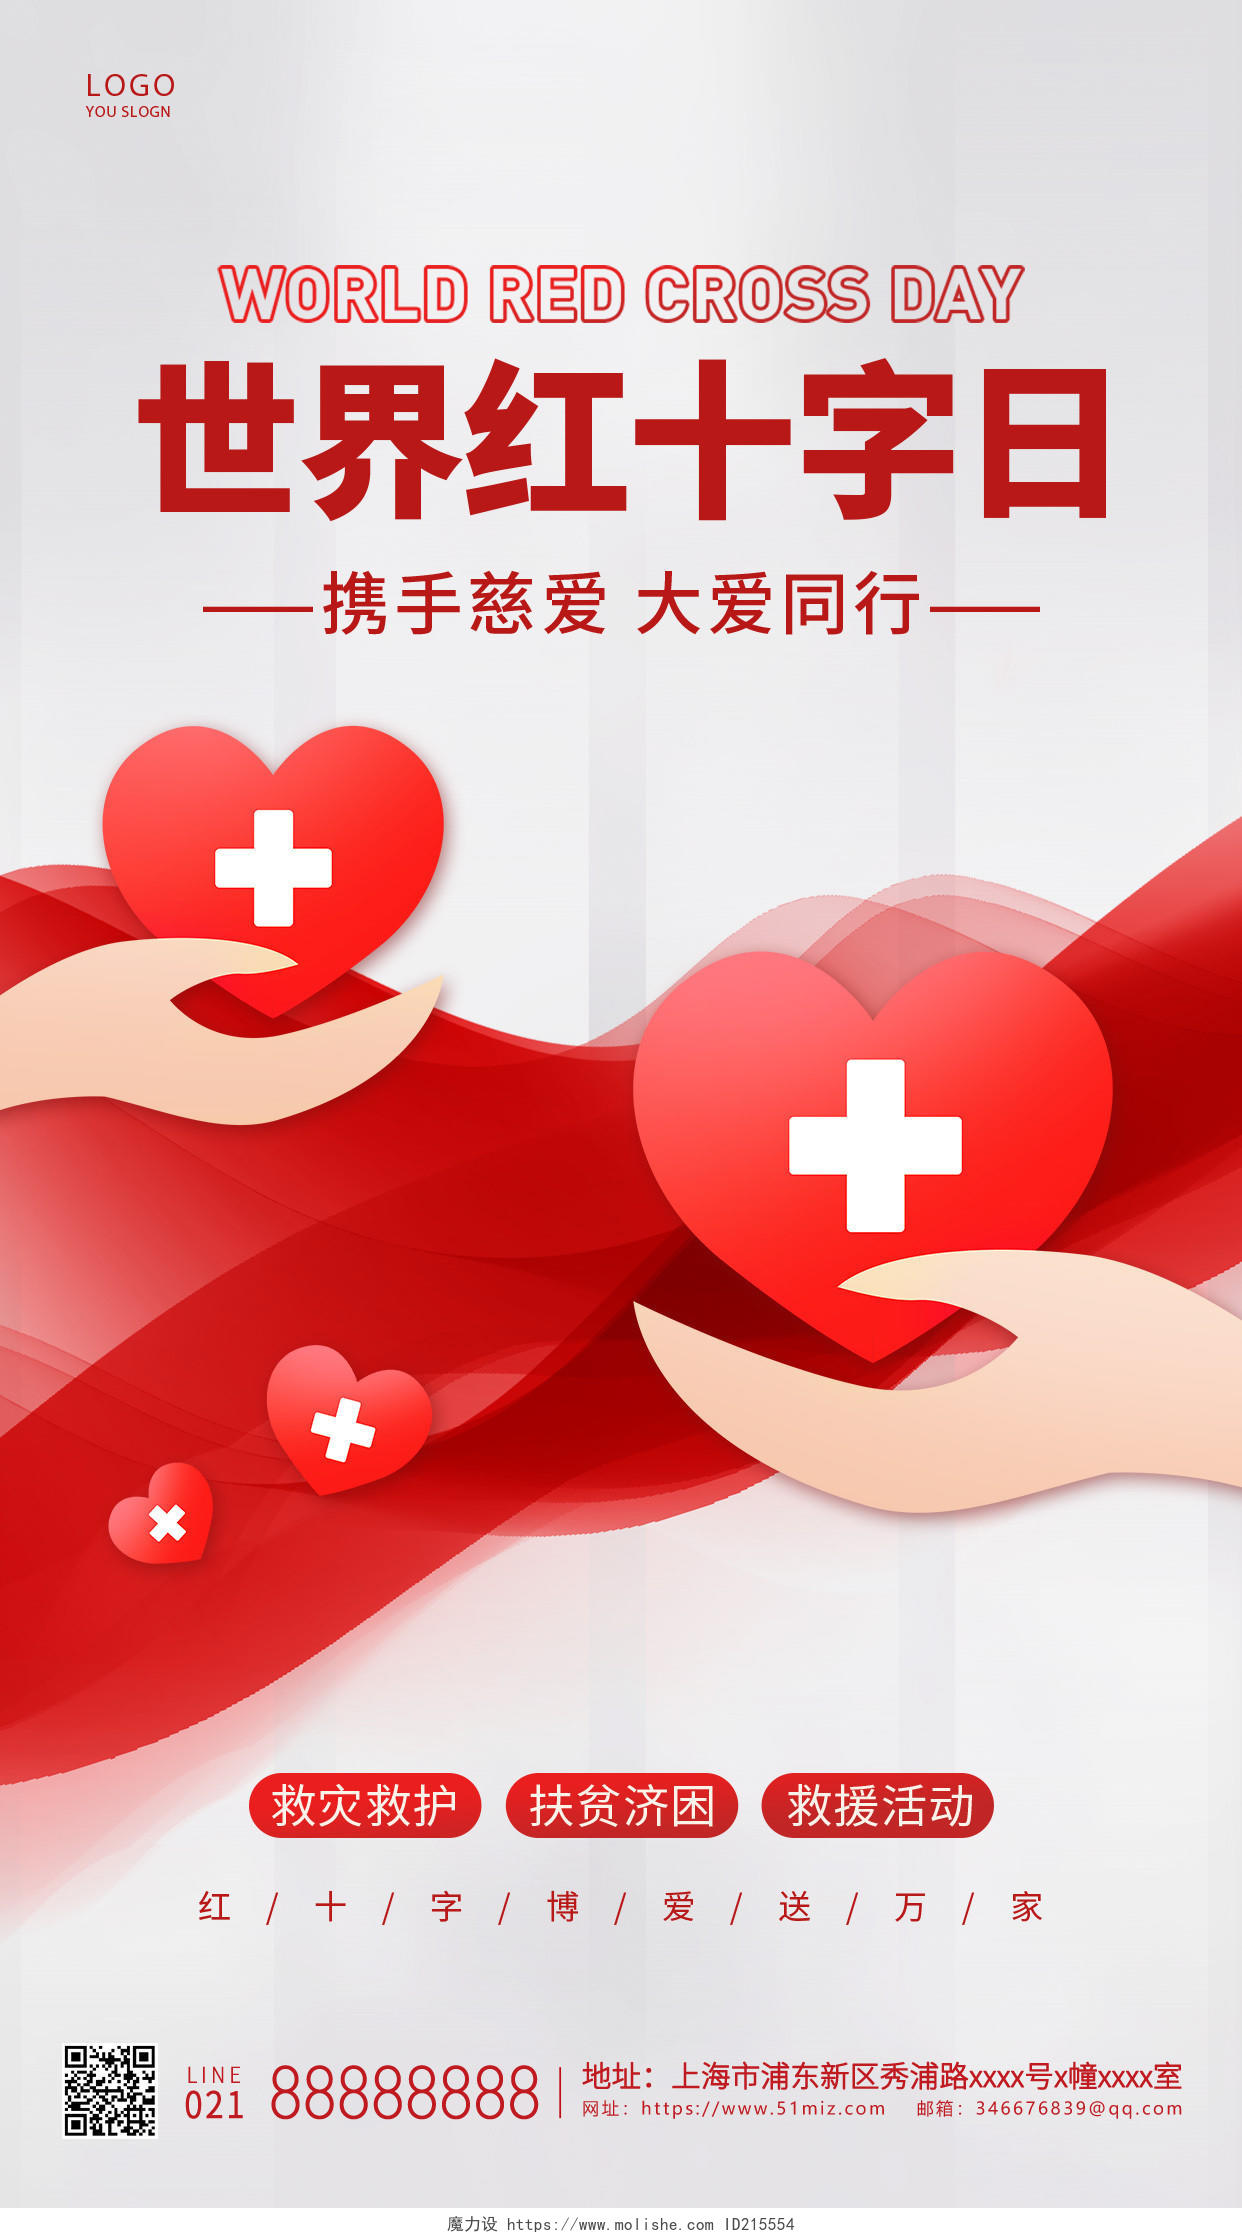 灰红色简约世界红十字日手机海报世界红十字日公益